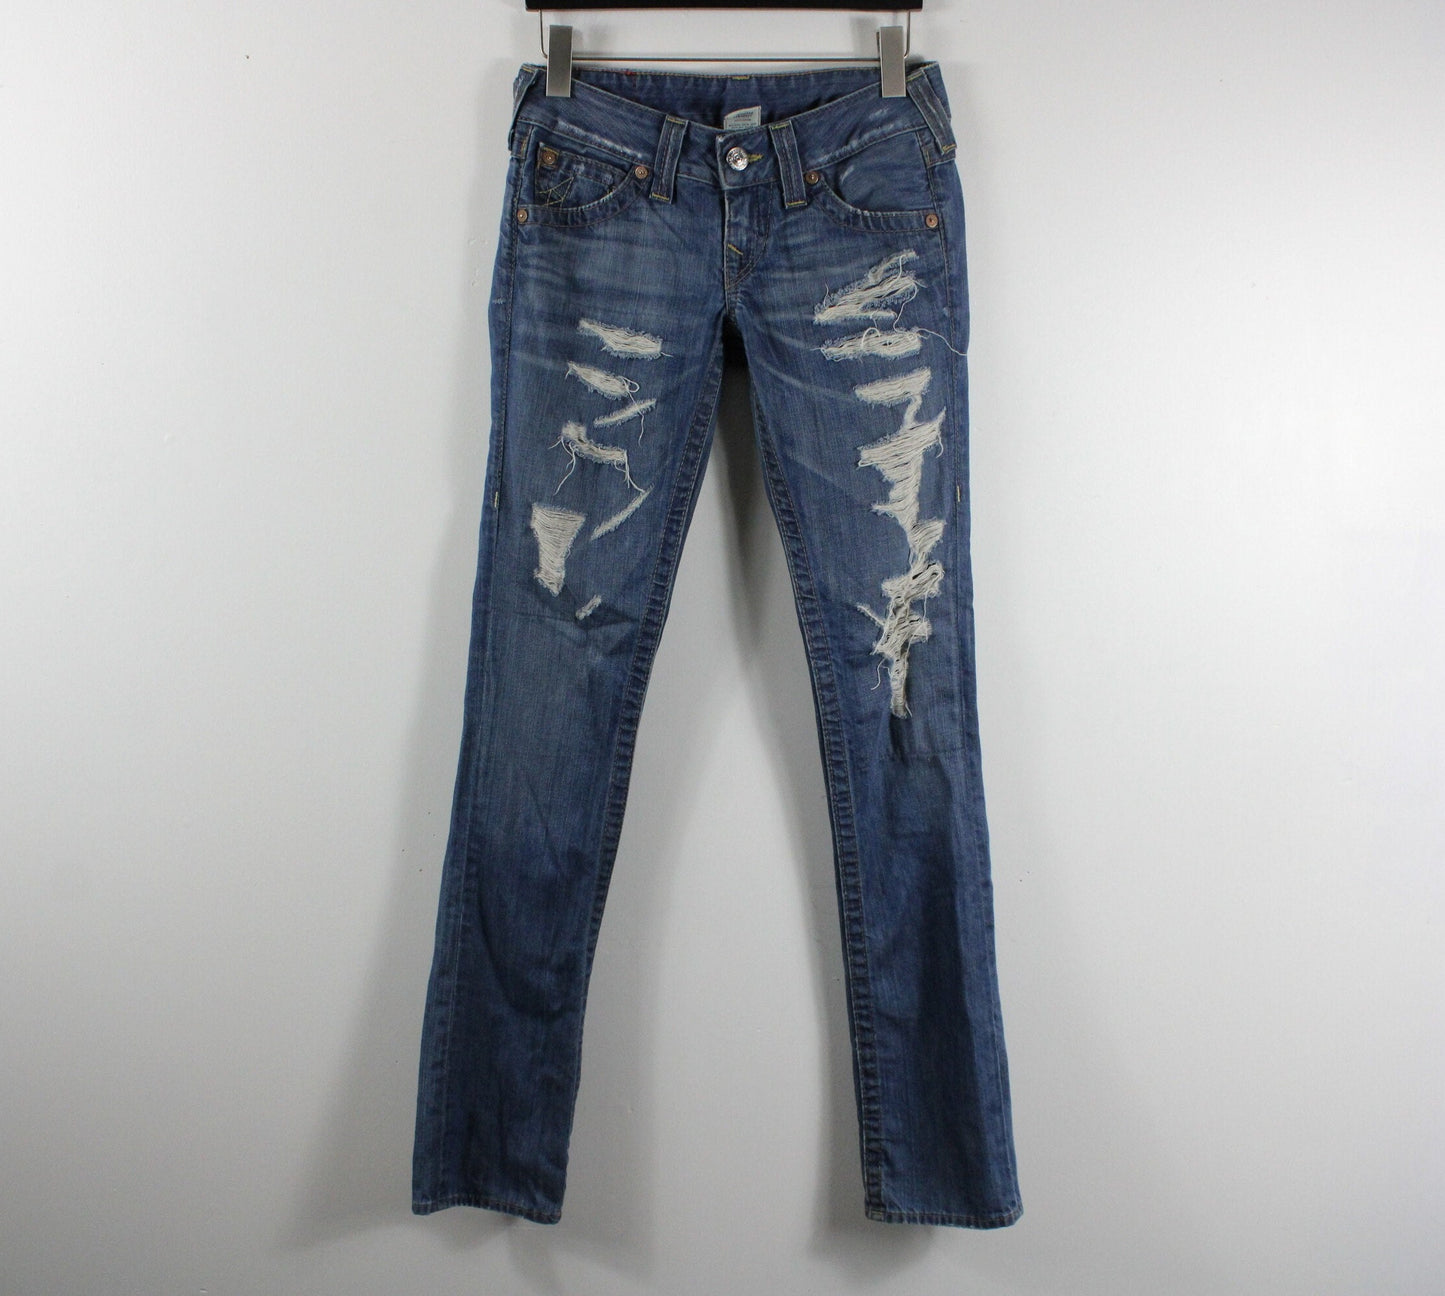 True Religion Jeans / Vintage Ripped Denim Trouser / 2000's Y2K Streetwear Clothing / Dark Blue / Size 26